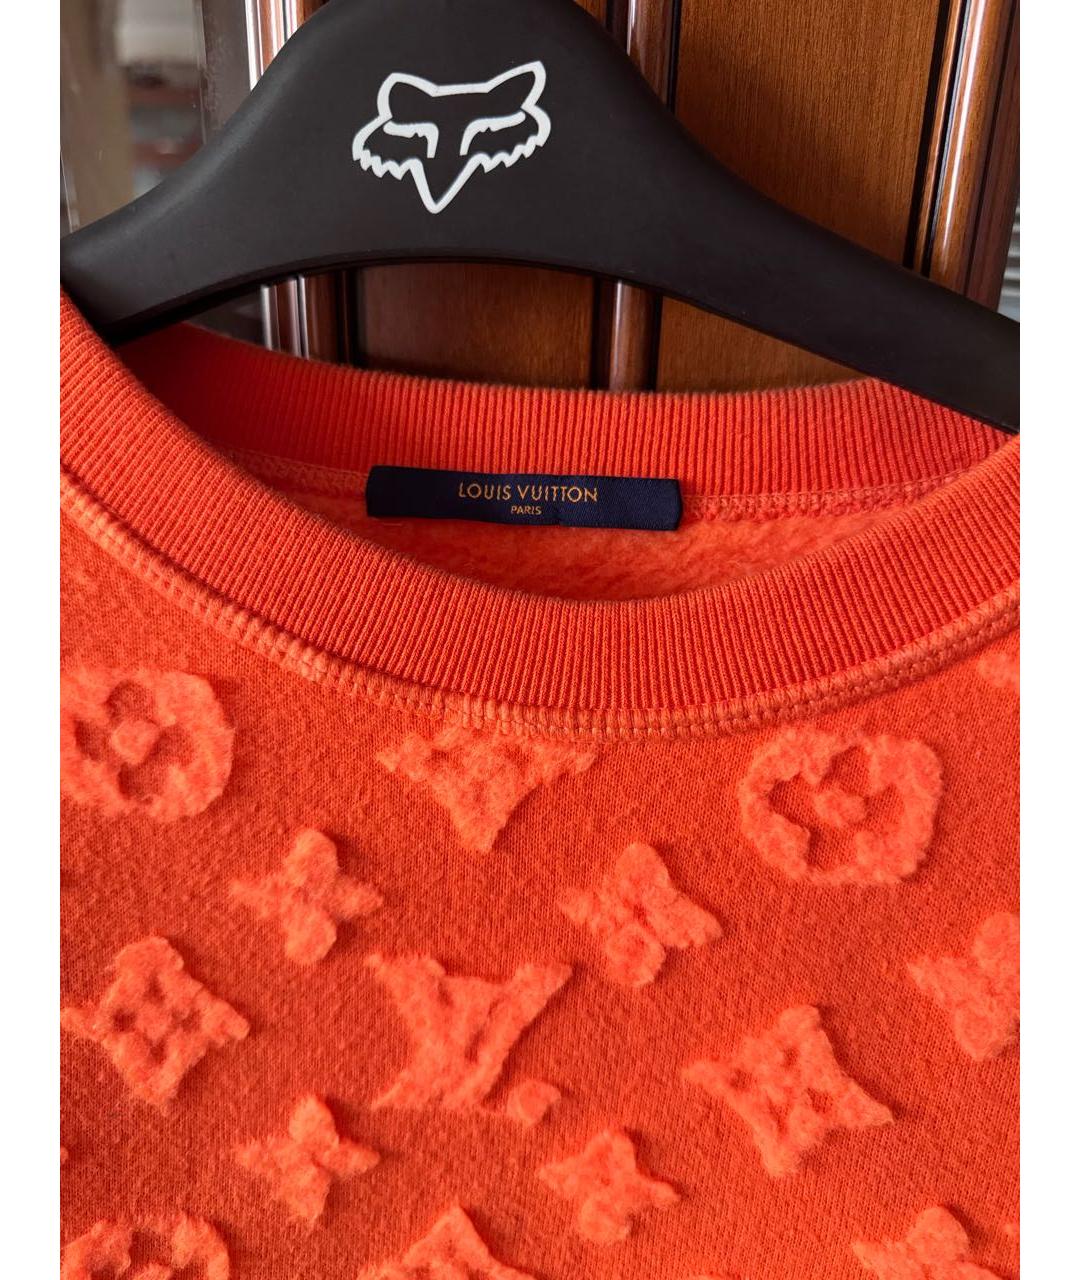 LOUIS VUITTON PRE-OWNED Оранжевый джемпер / свитер, фото 2